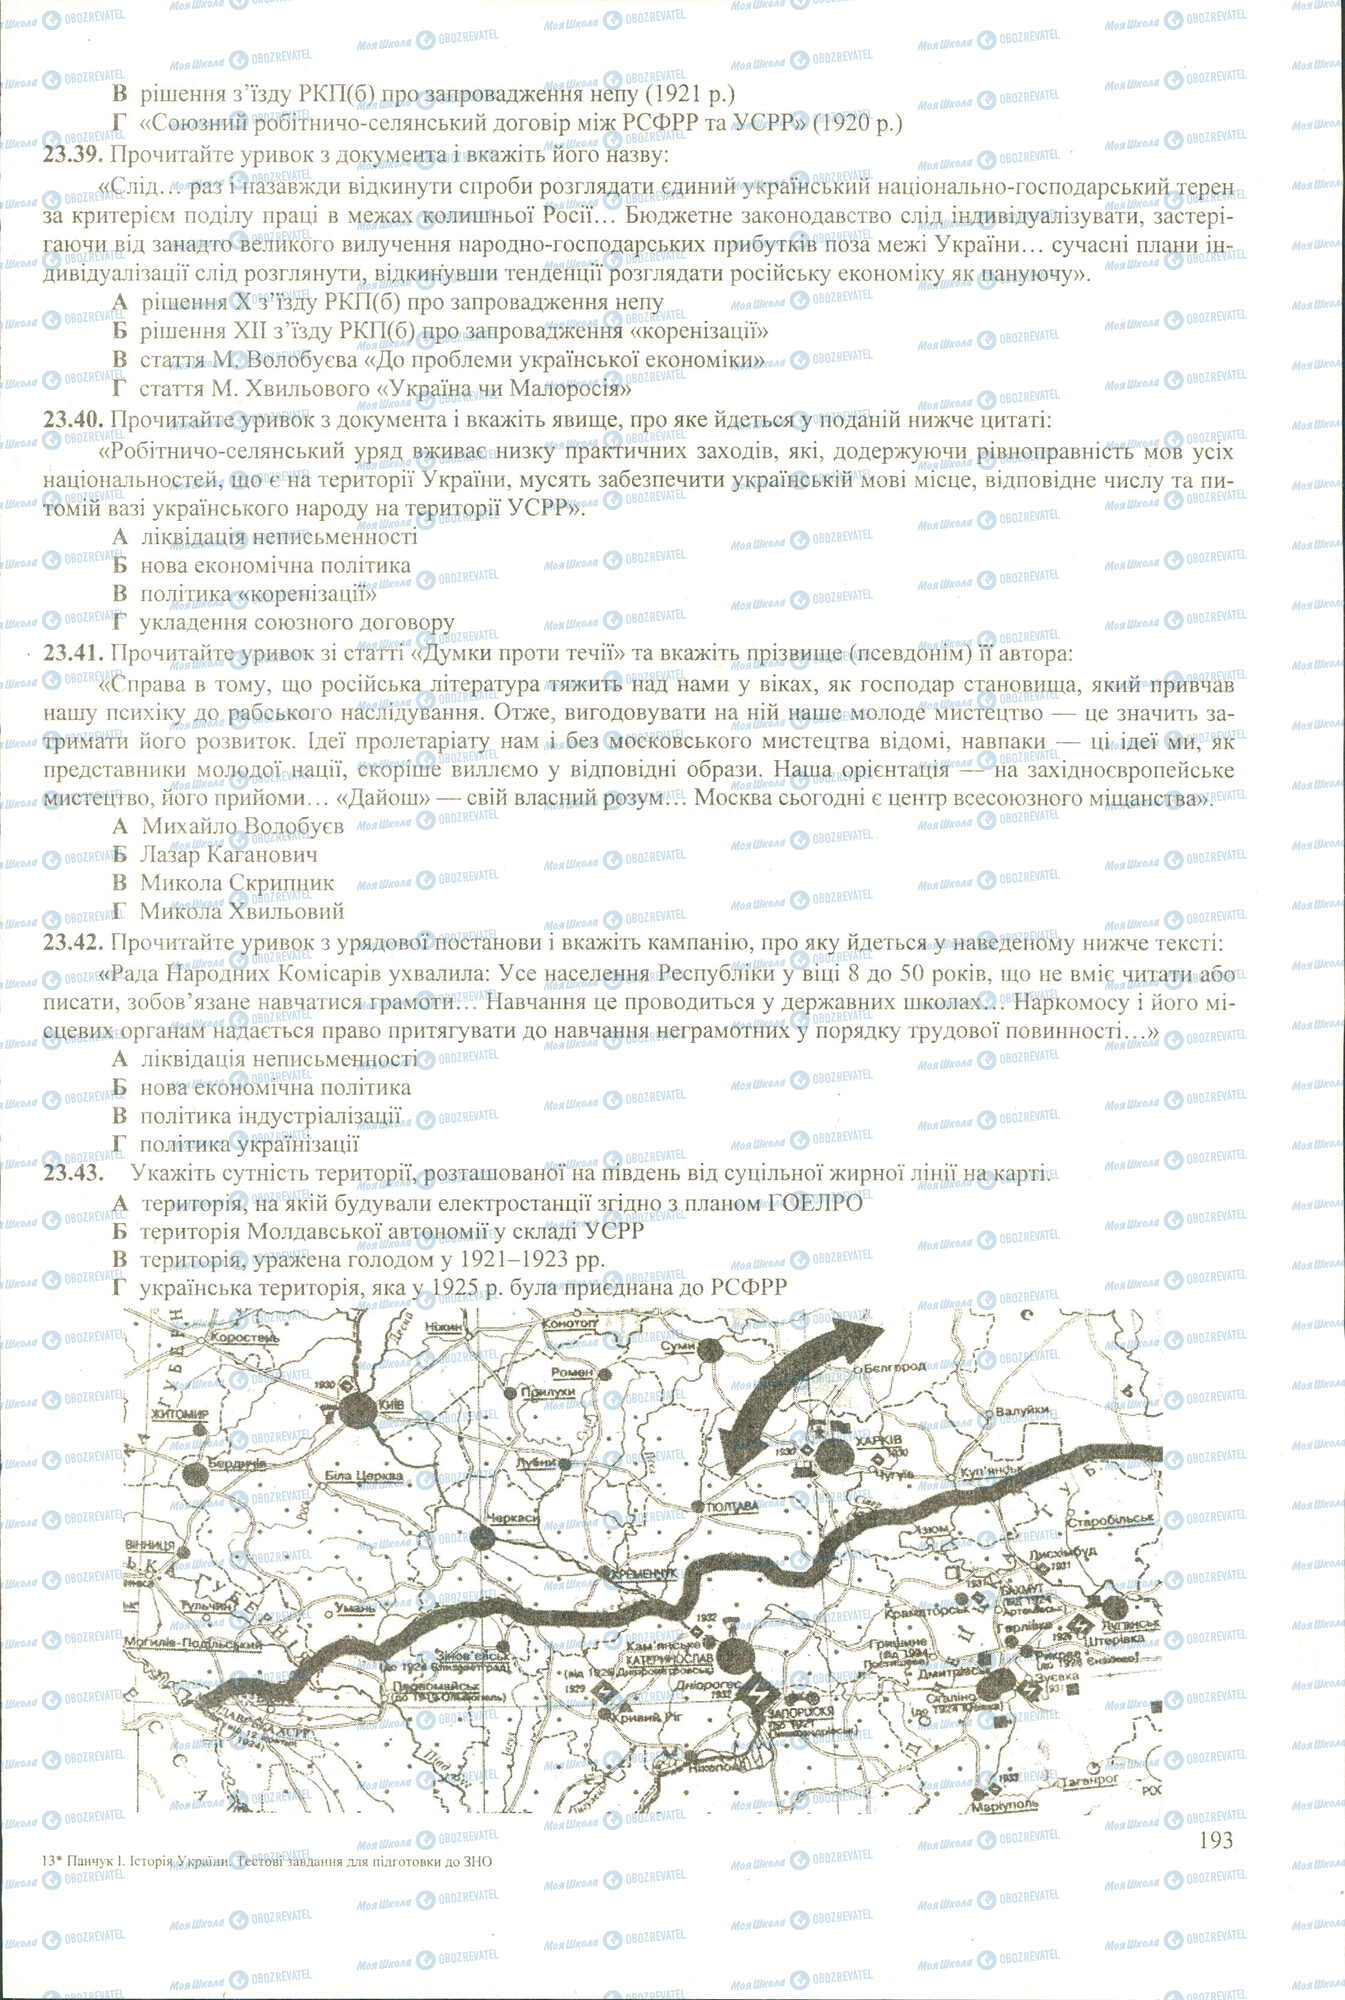 ЗНО История Украины 11 класс страница 39-43